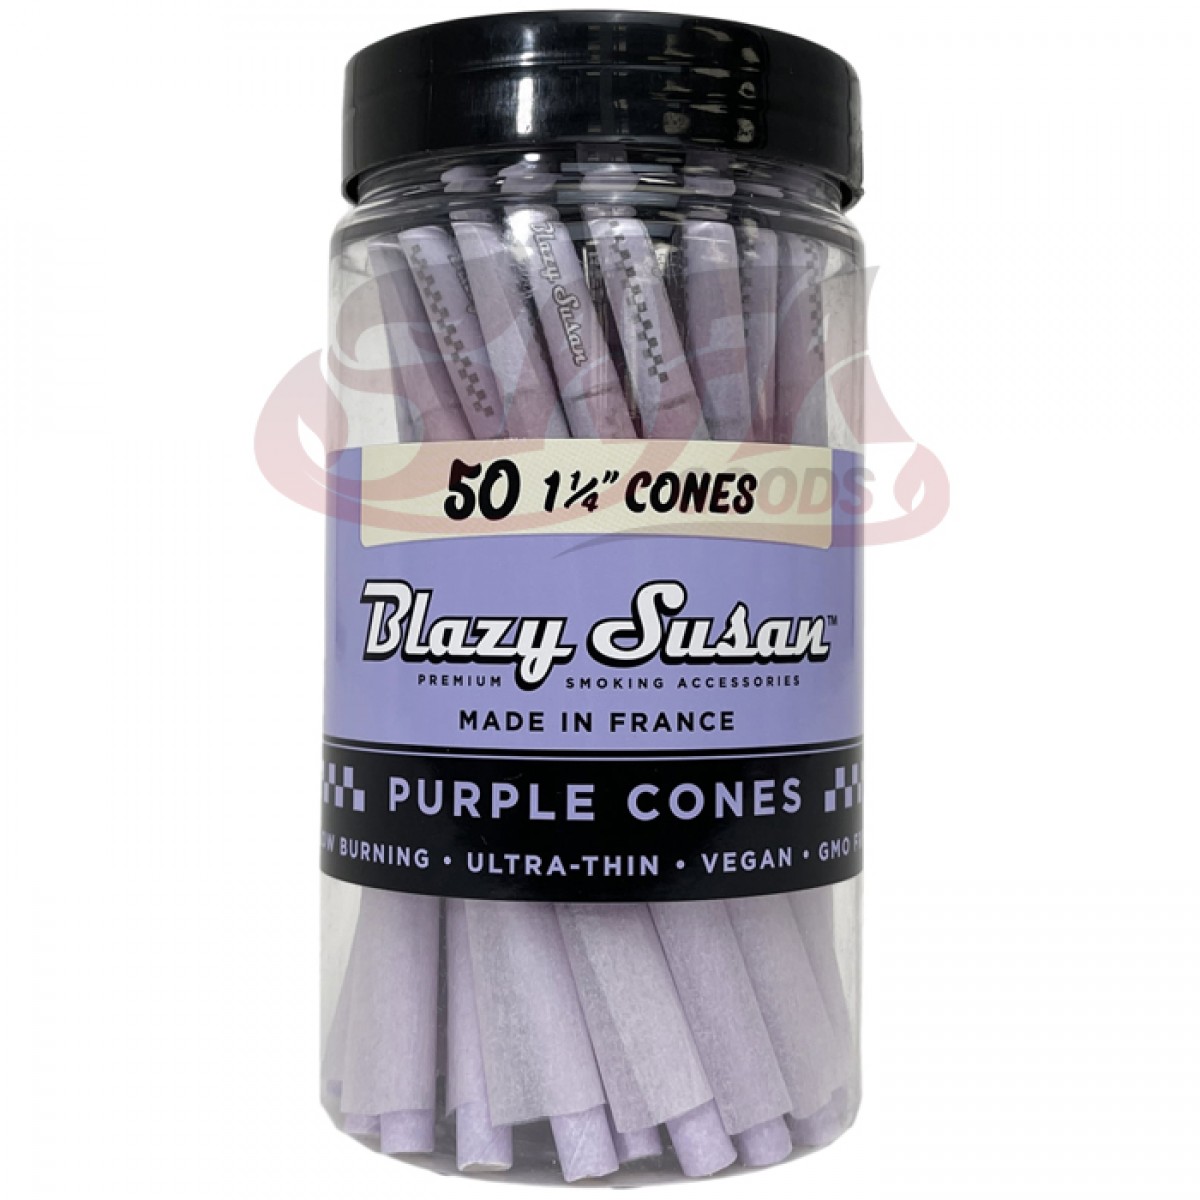 Blazy Susan - Purple Cones 1-1/4 - 50CT Jar